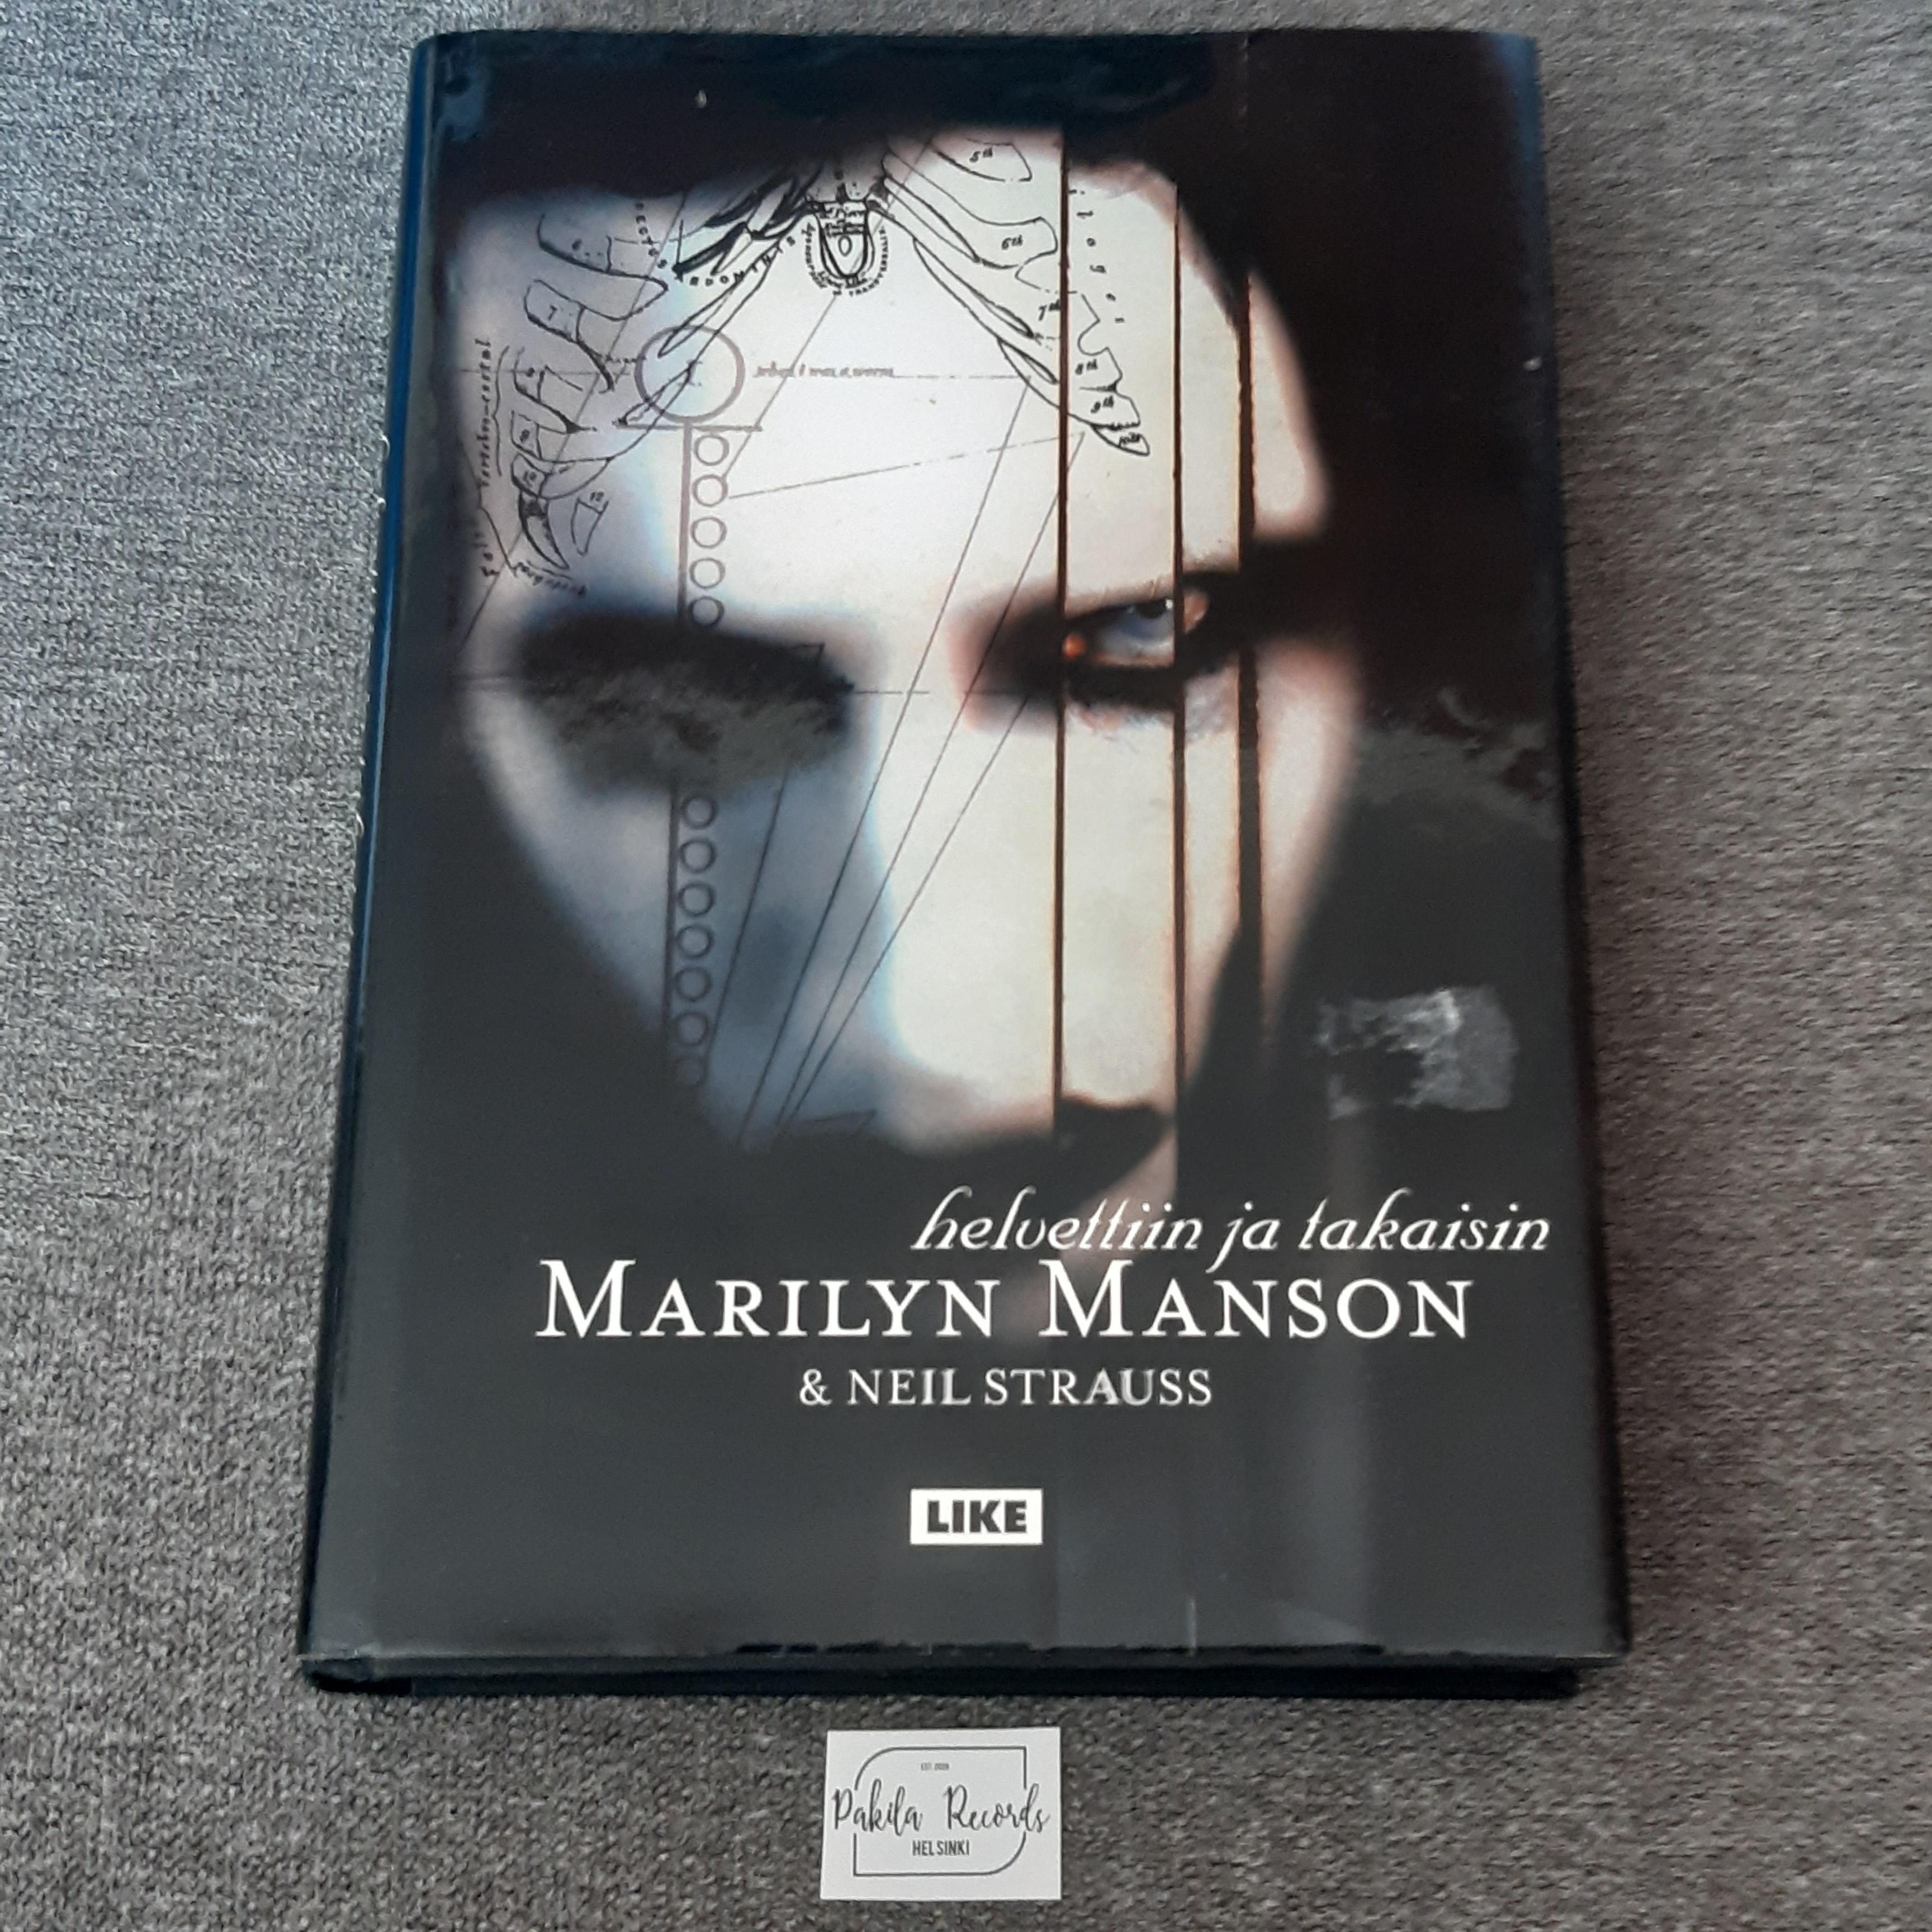 Helvettiin ja takaisin - Marilyn Manson & Neil Strauss - Kirja (käytetty)